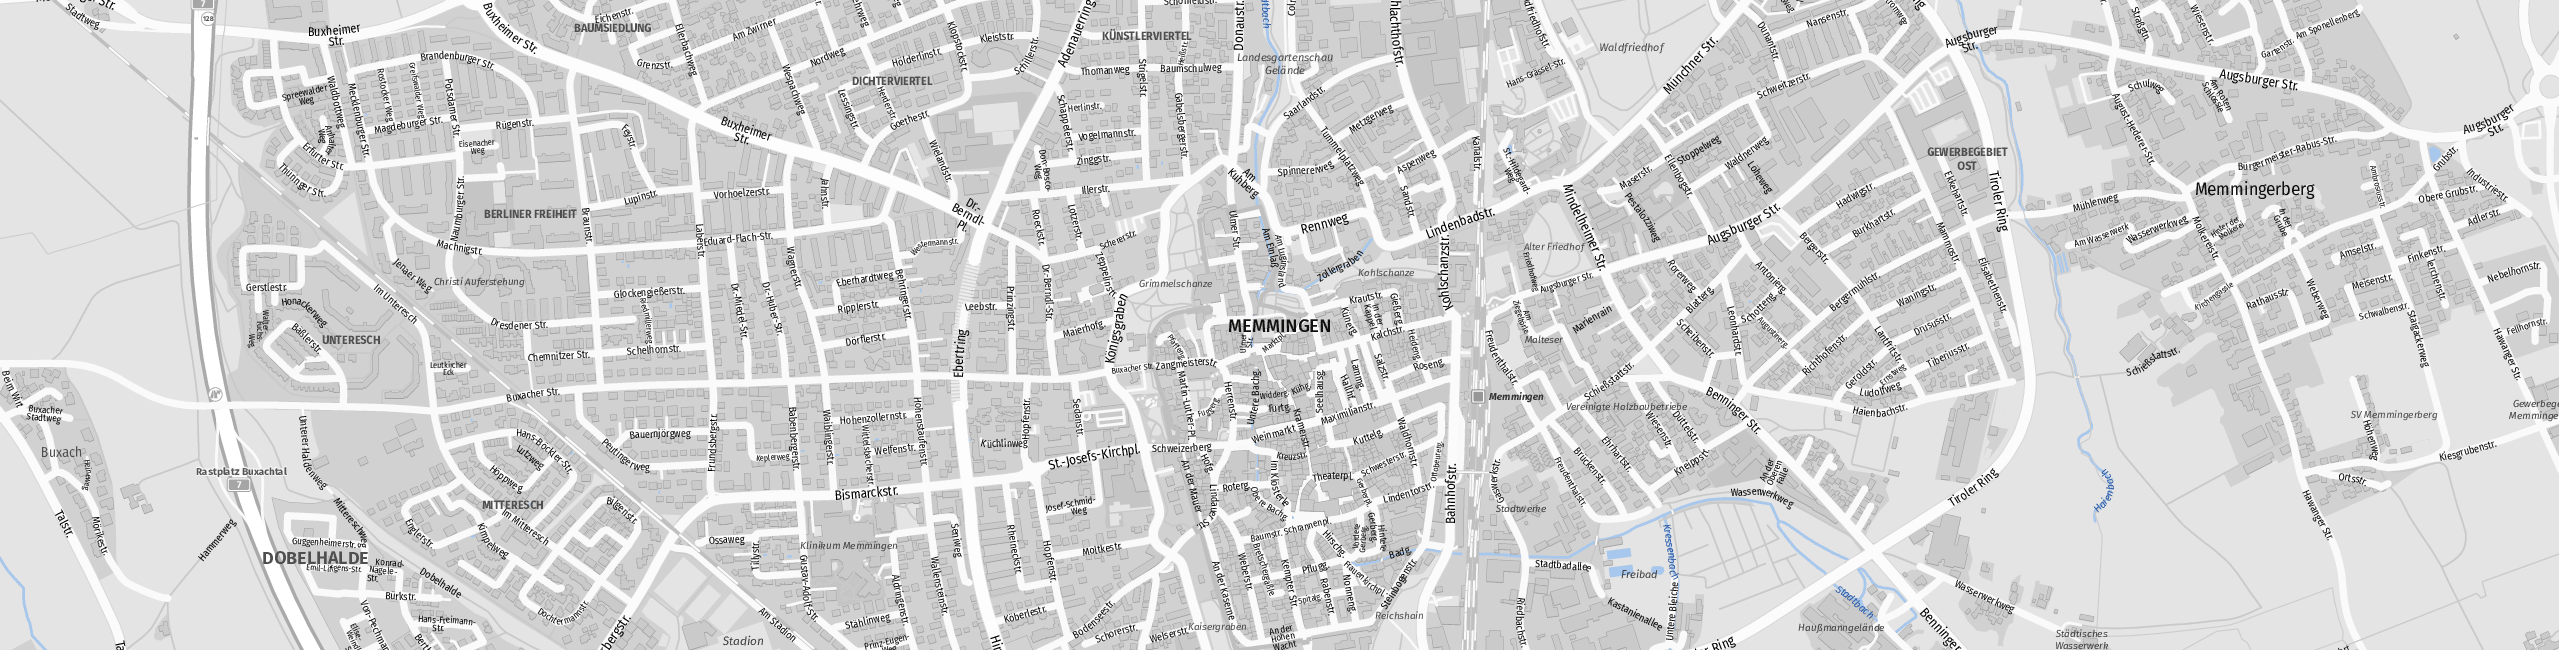 Stadtplan Memmingen zum Downloaden.